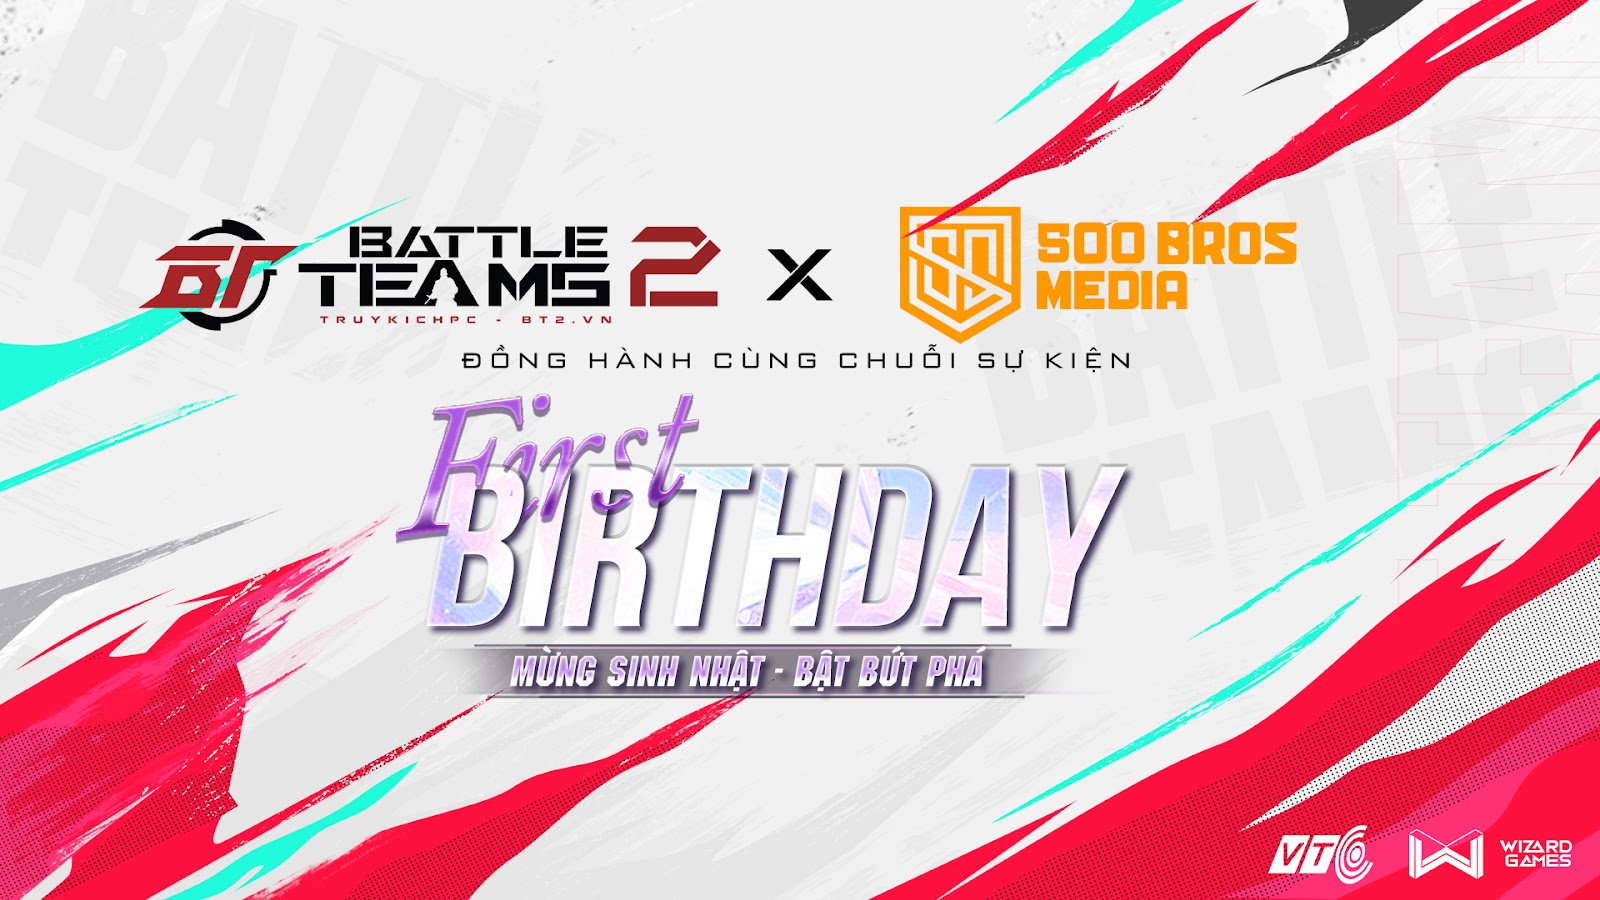 VTC và 500BROS bắt tay đồng hành cùng chuỗi sự kiện “Mừng sinh nhật - Bật bứt phá” của sản phẩm Battle Teams 2 (Truy Kích PC)